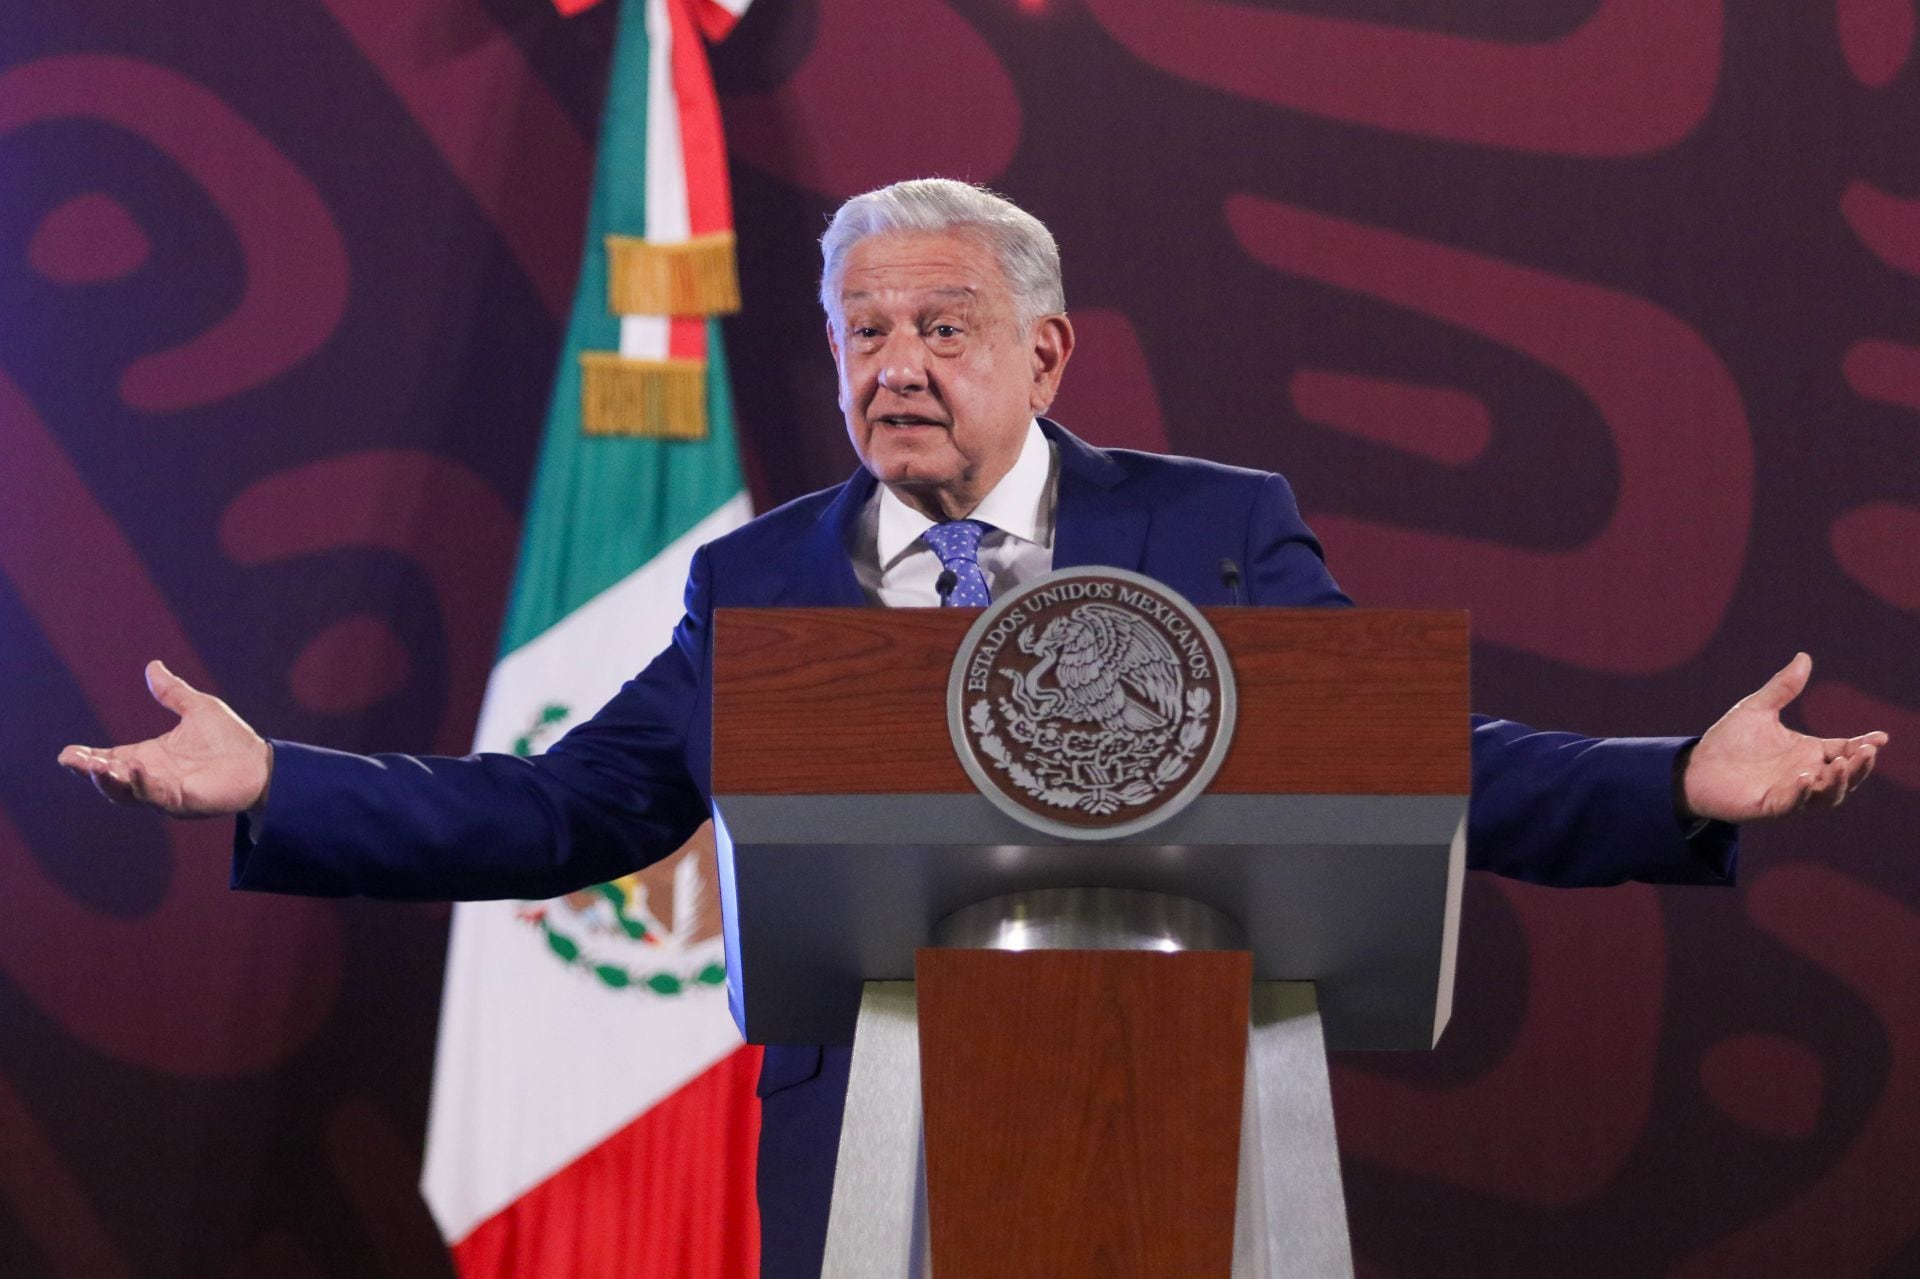 AMLO ‘pone mano dura’ a... ¿EU? Advierte que México será estricto con visas a estadounidenses